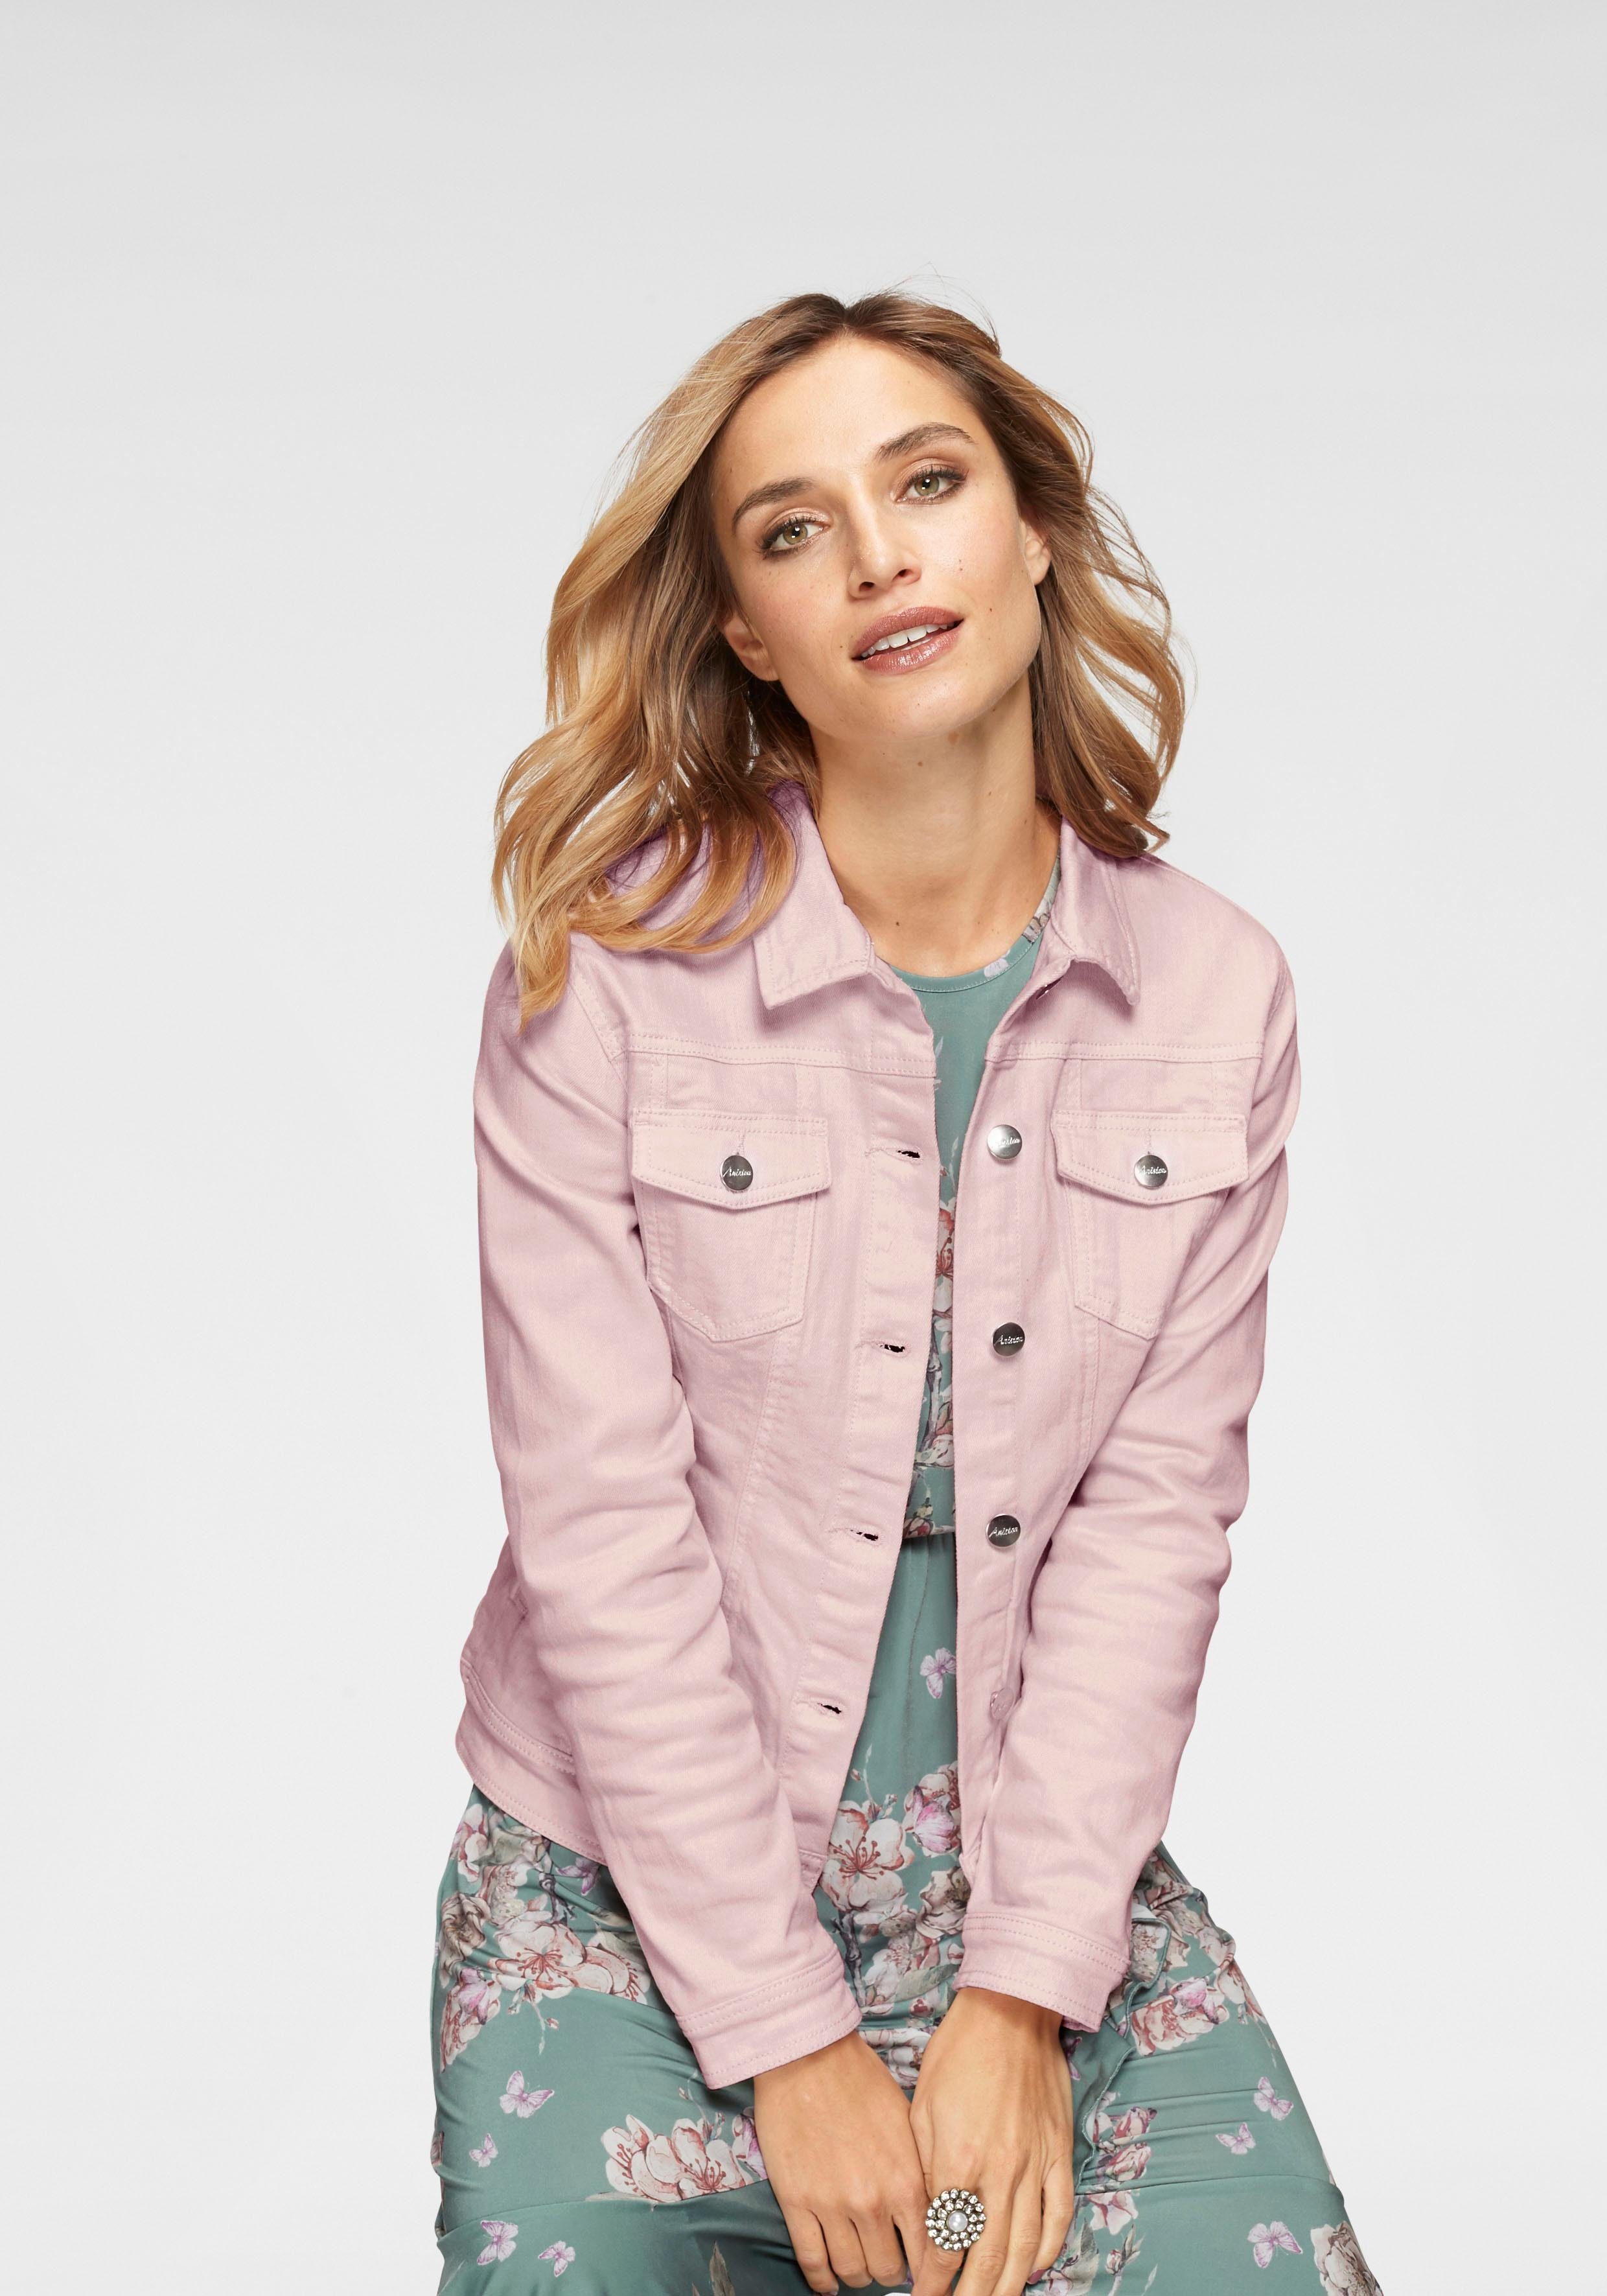 Rosa Jeansjacken für Damen kaufen » Pinke Jeansjacken | OTTO